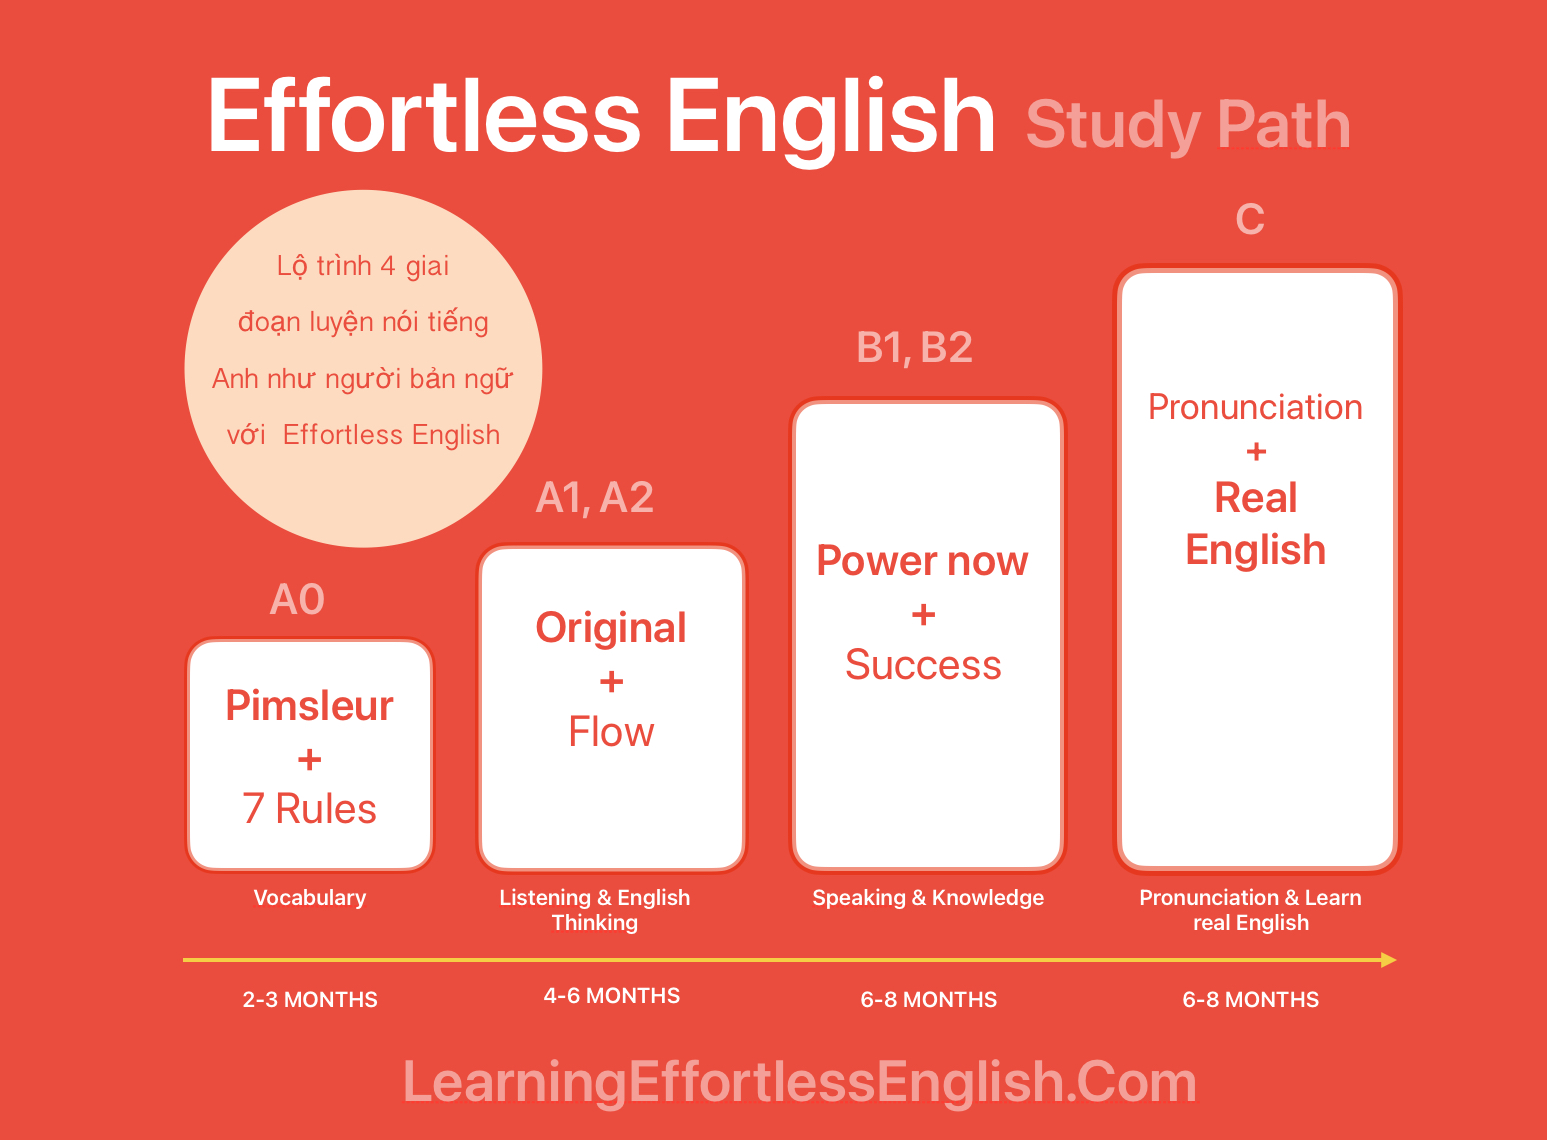 Lộ trình học Effortless English từ cơ bản đến nâng cao